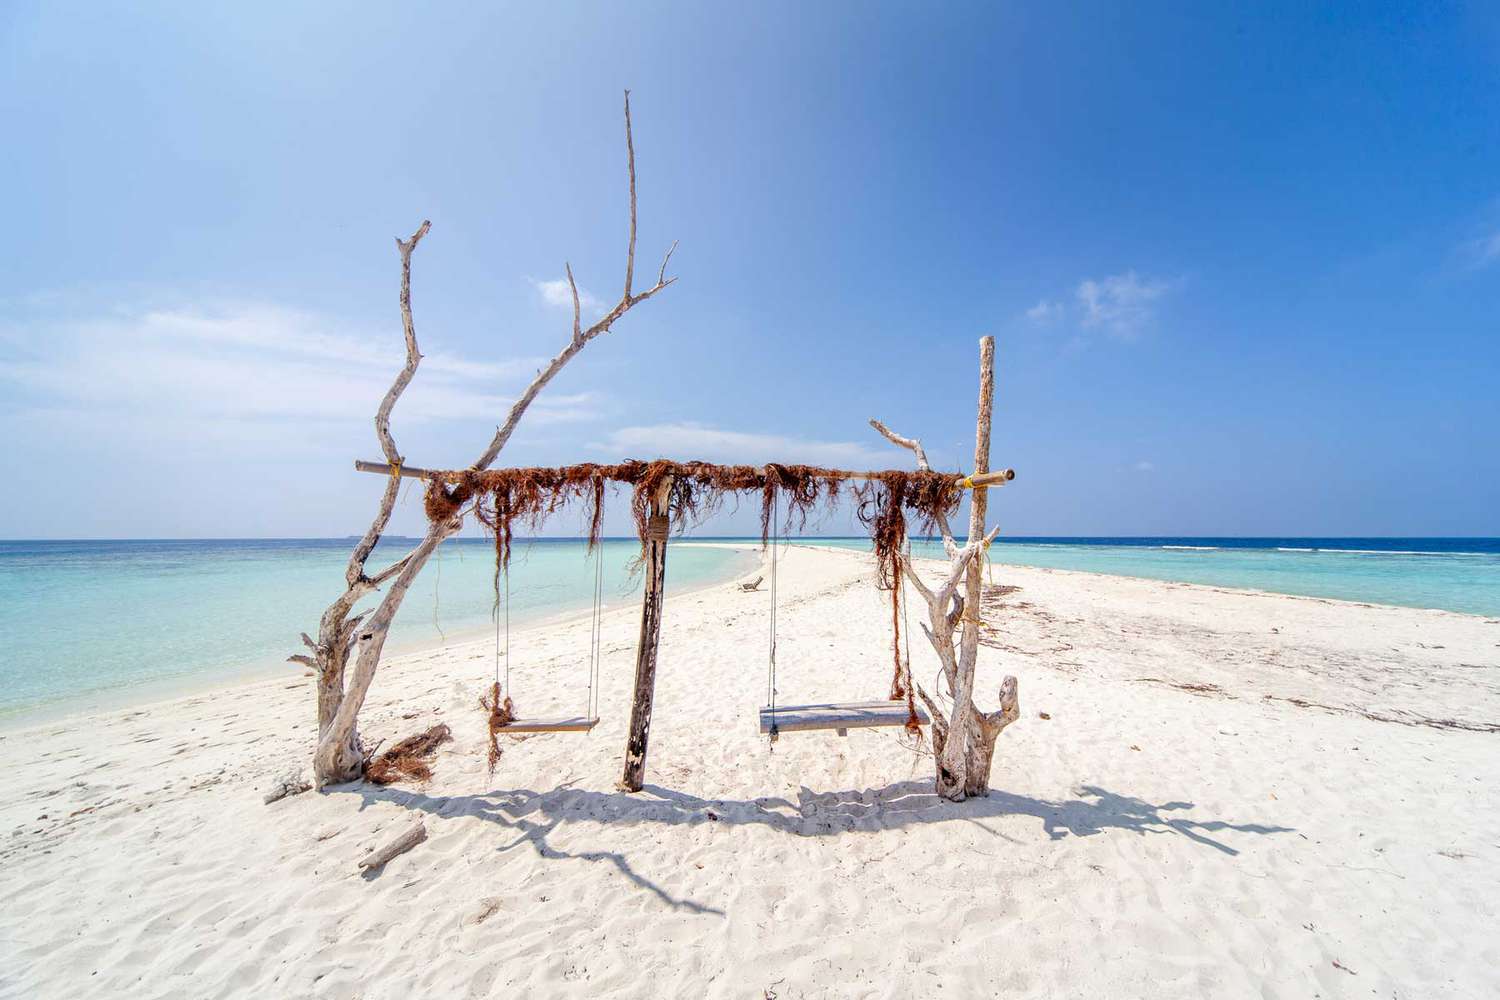 L'incroyable île d'Omadhoo aux Maldives, avec une belle plage de sable blanc et une eau turquoise.